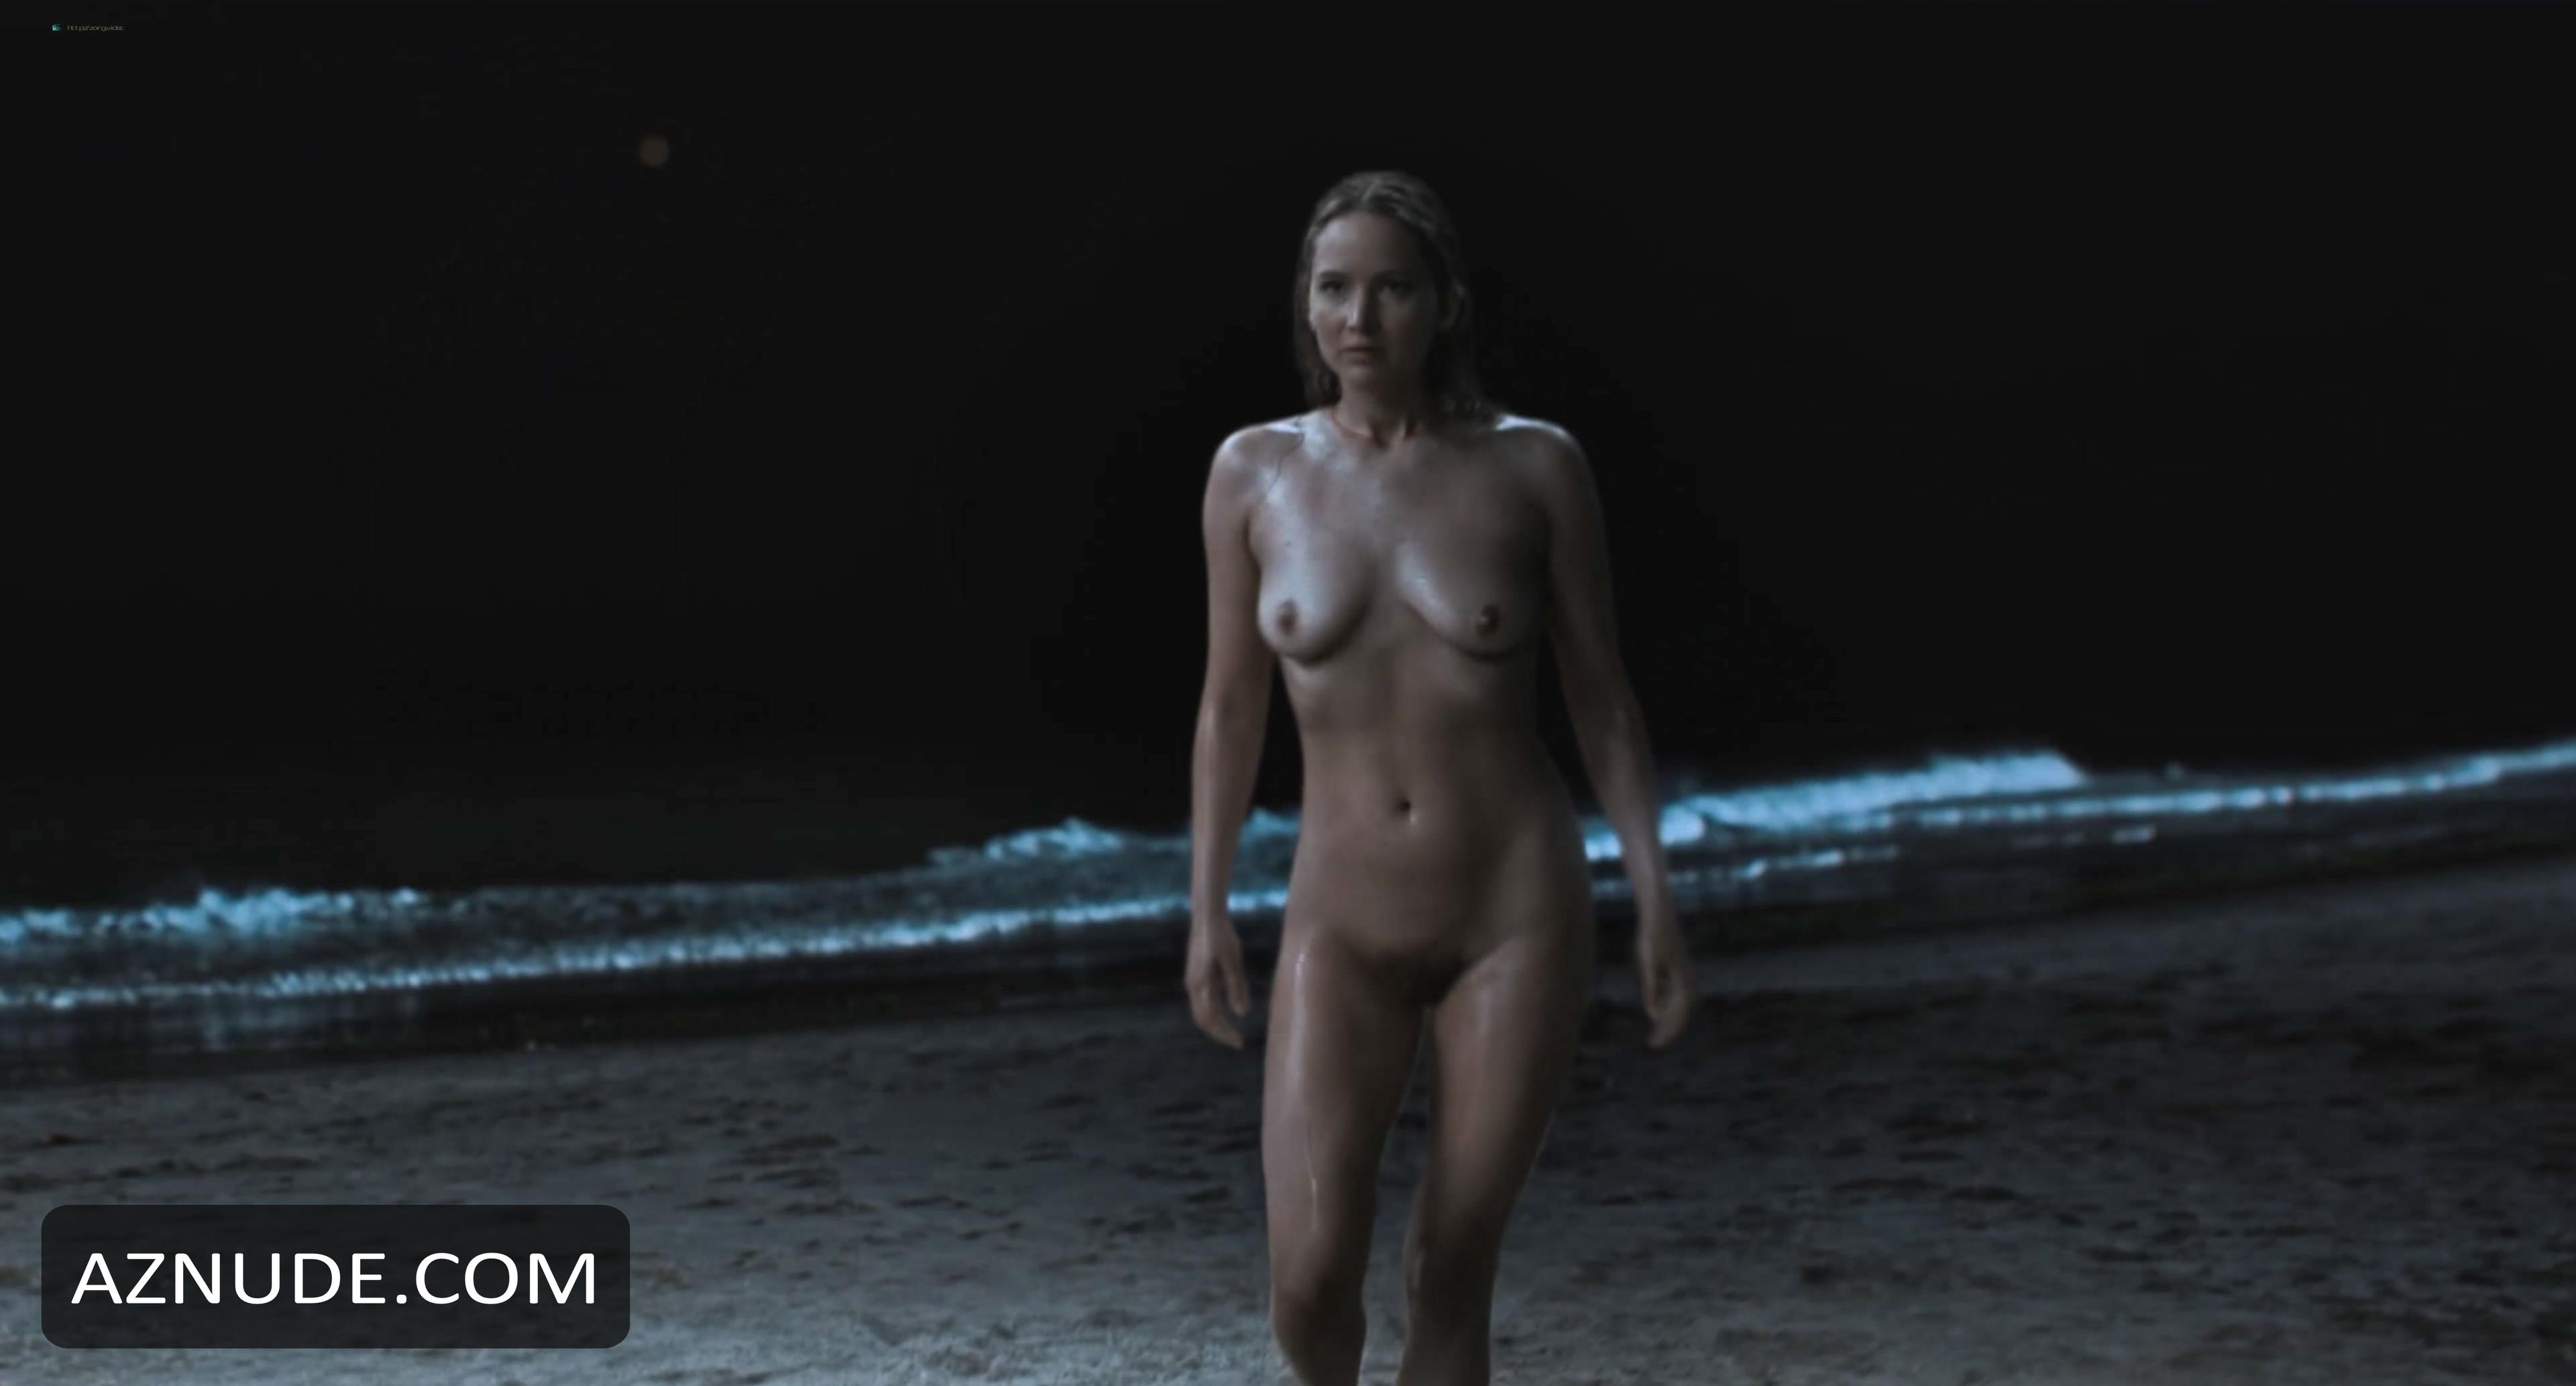 Jennifer lawerence no hard feelings nude scene